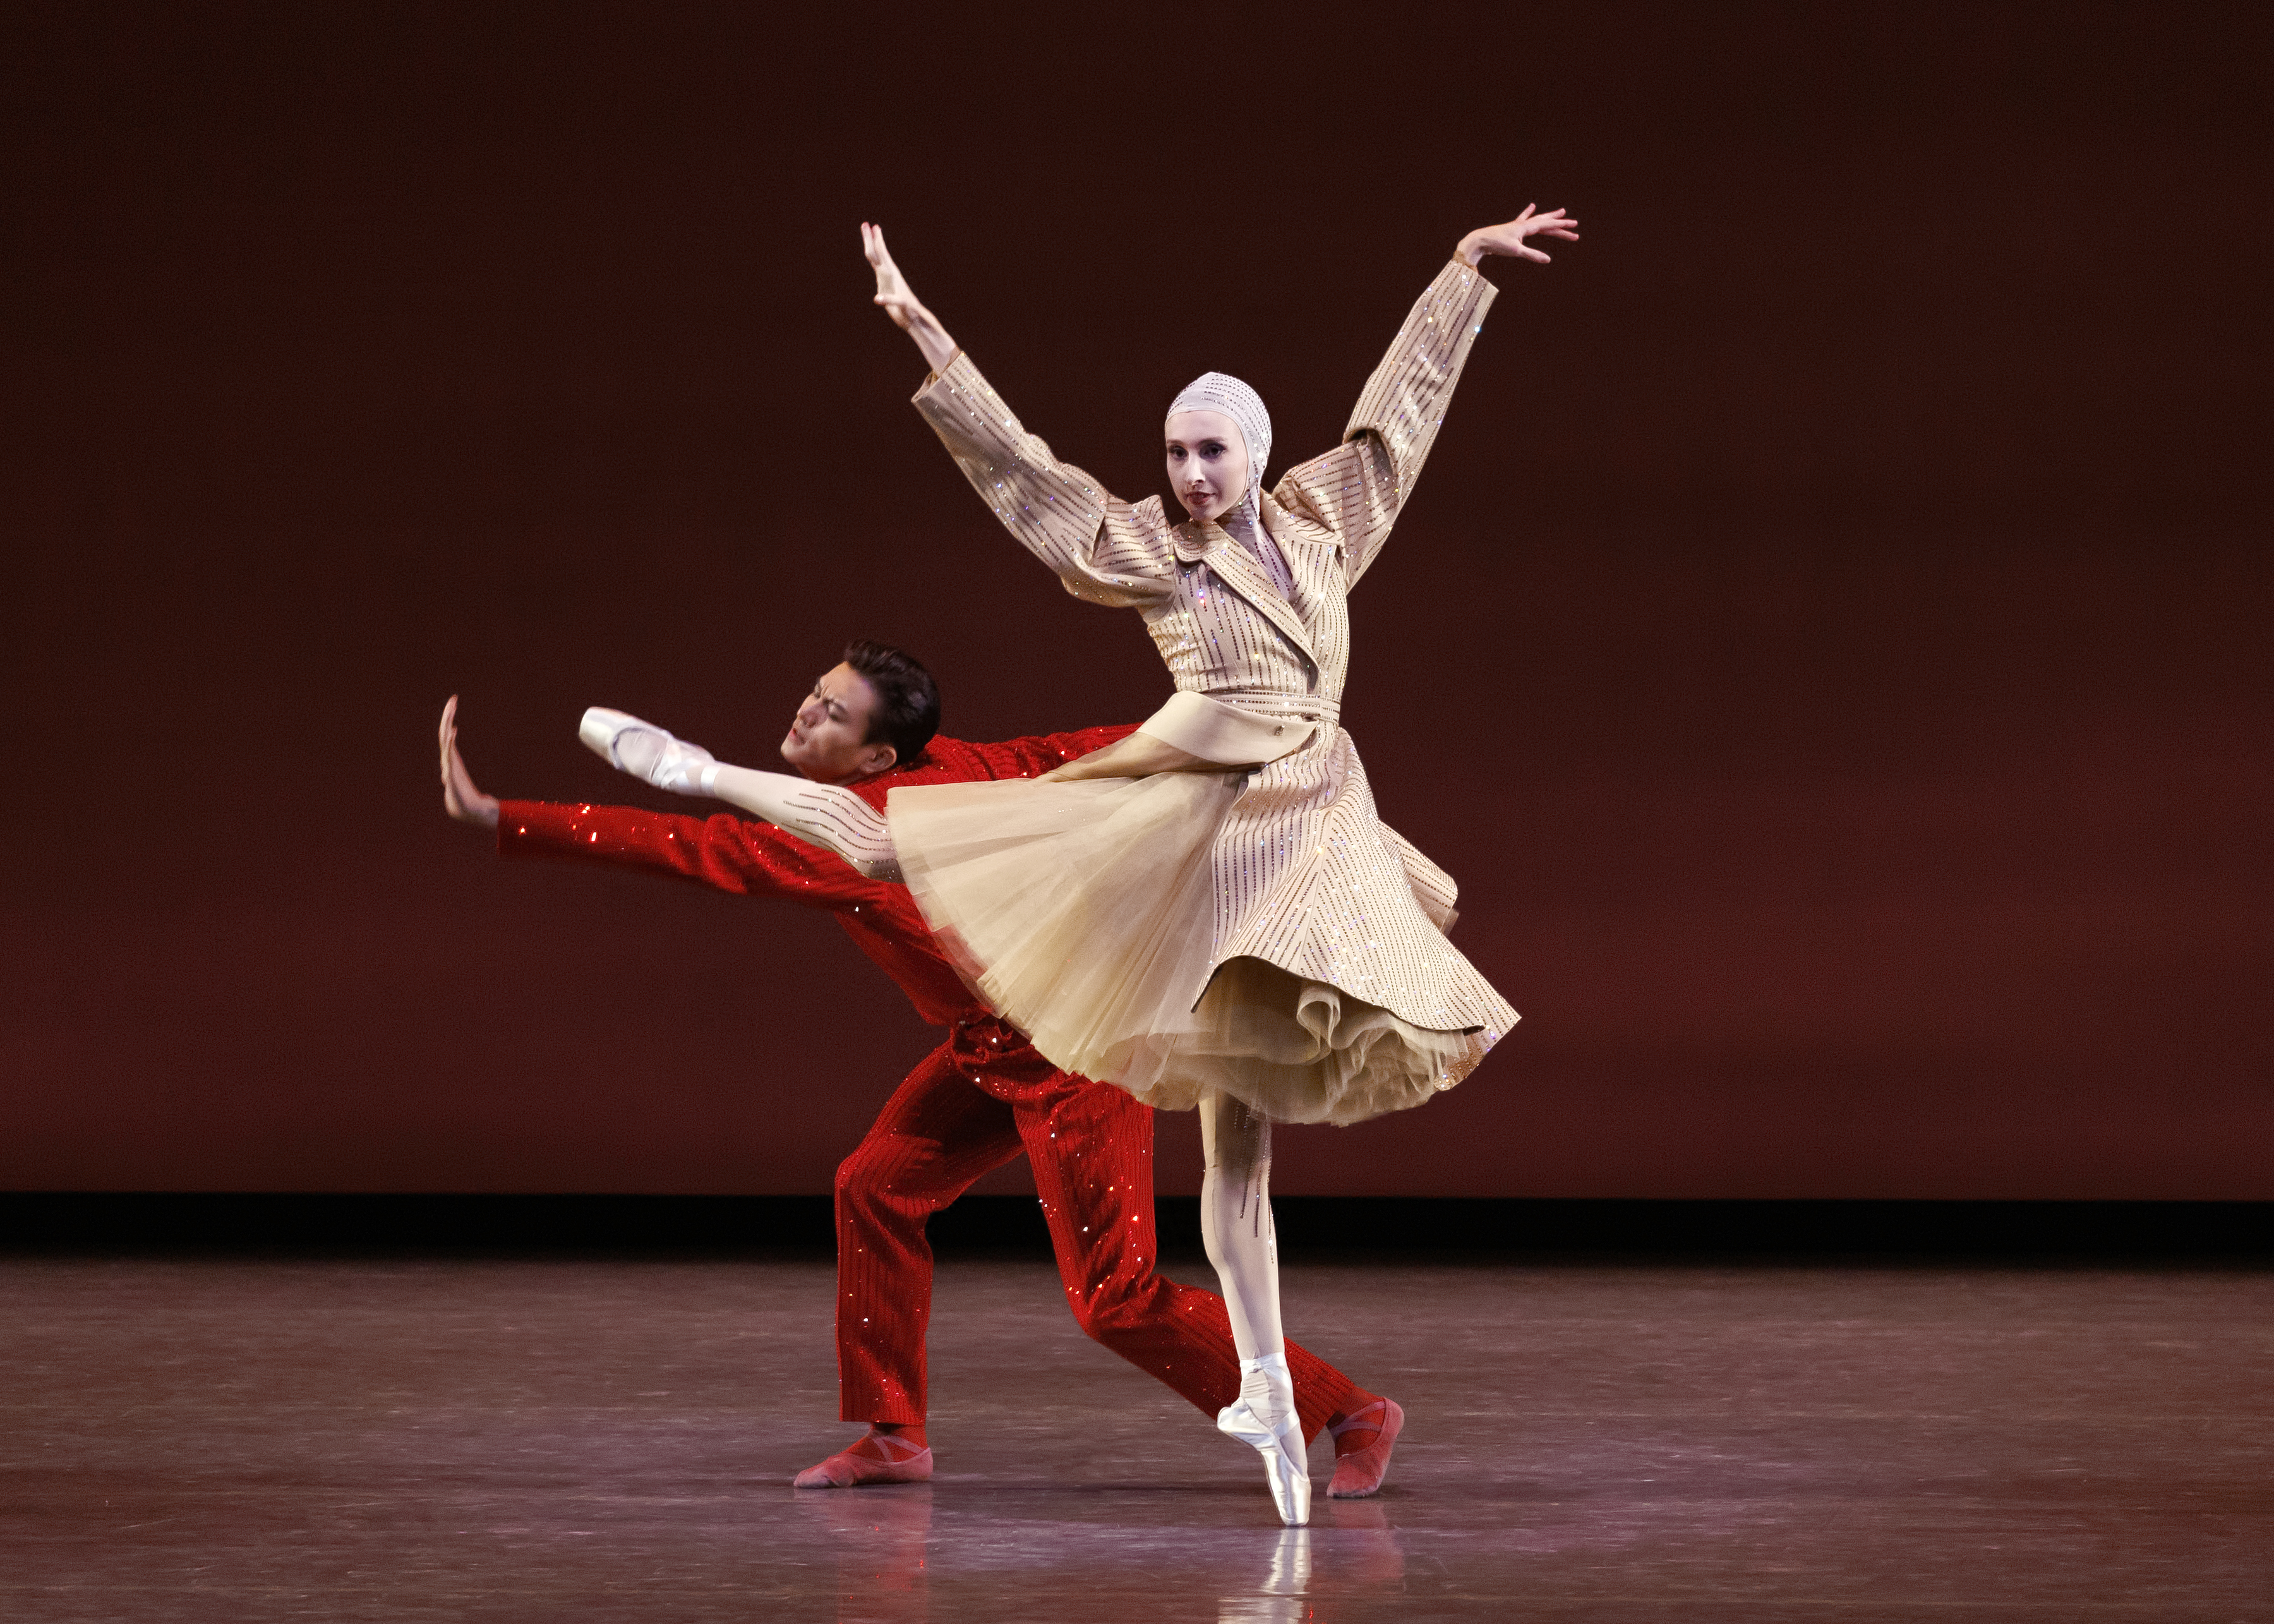  Palomo Spain hace brillar al ballet de Nueva York con medio millón de cristales Swarovski